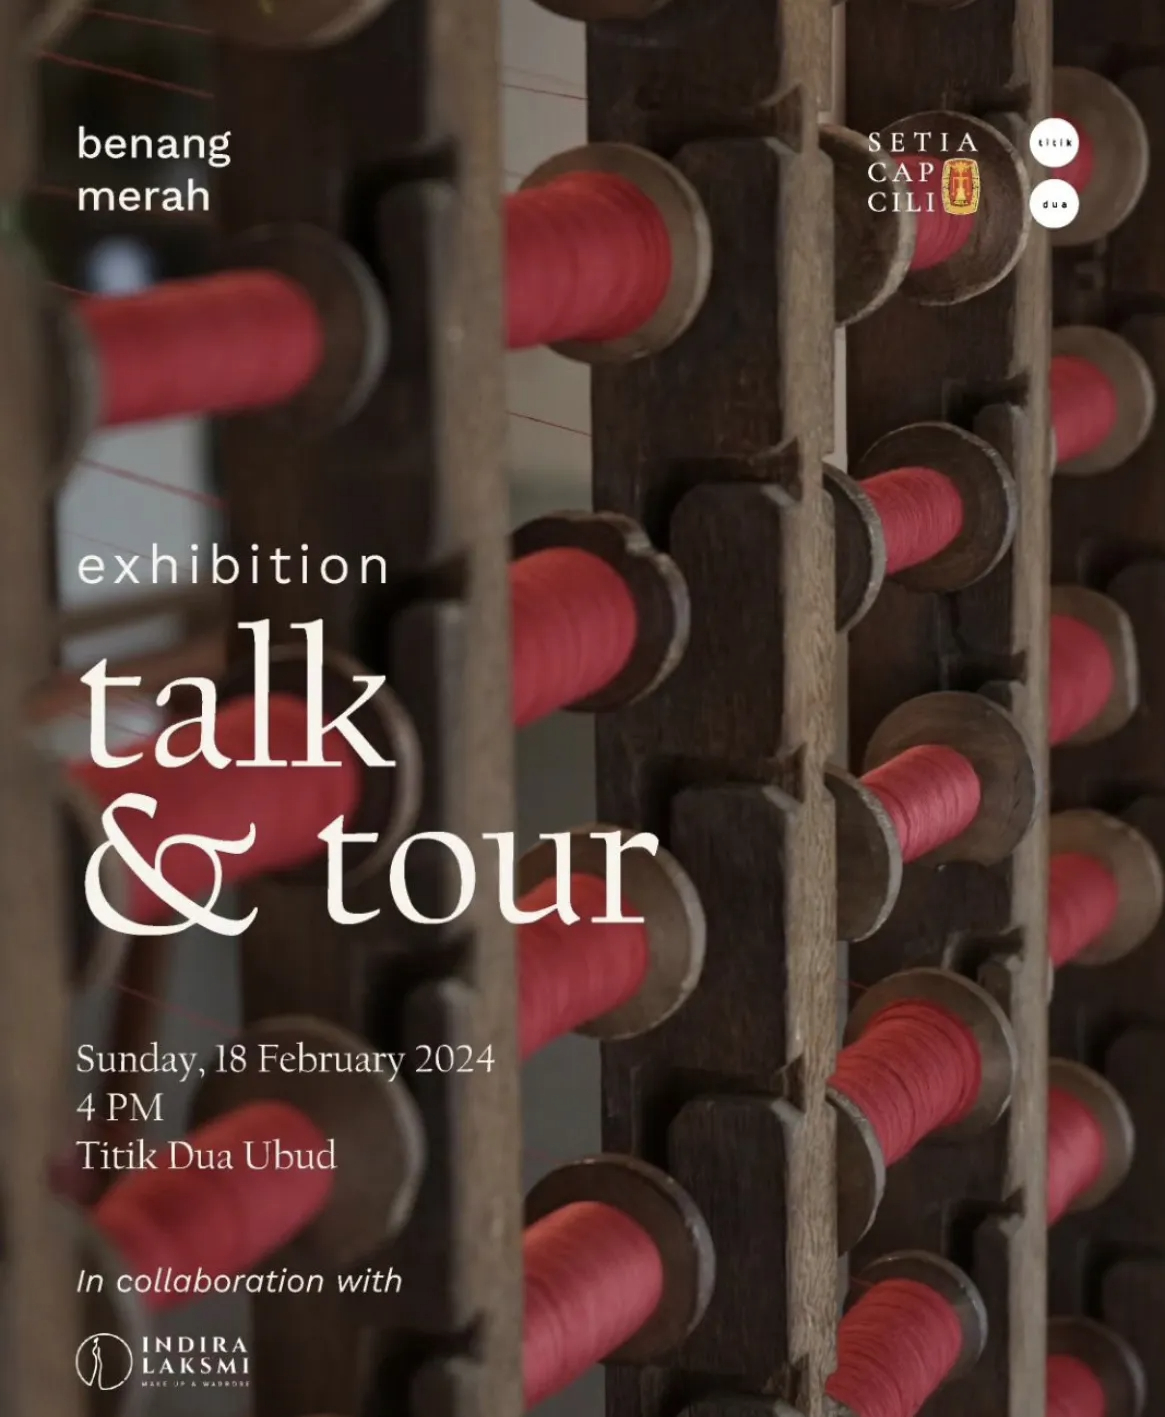 Exhibition Talk & Tour 13643